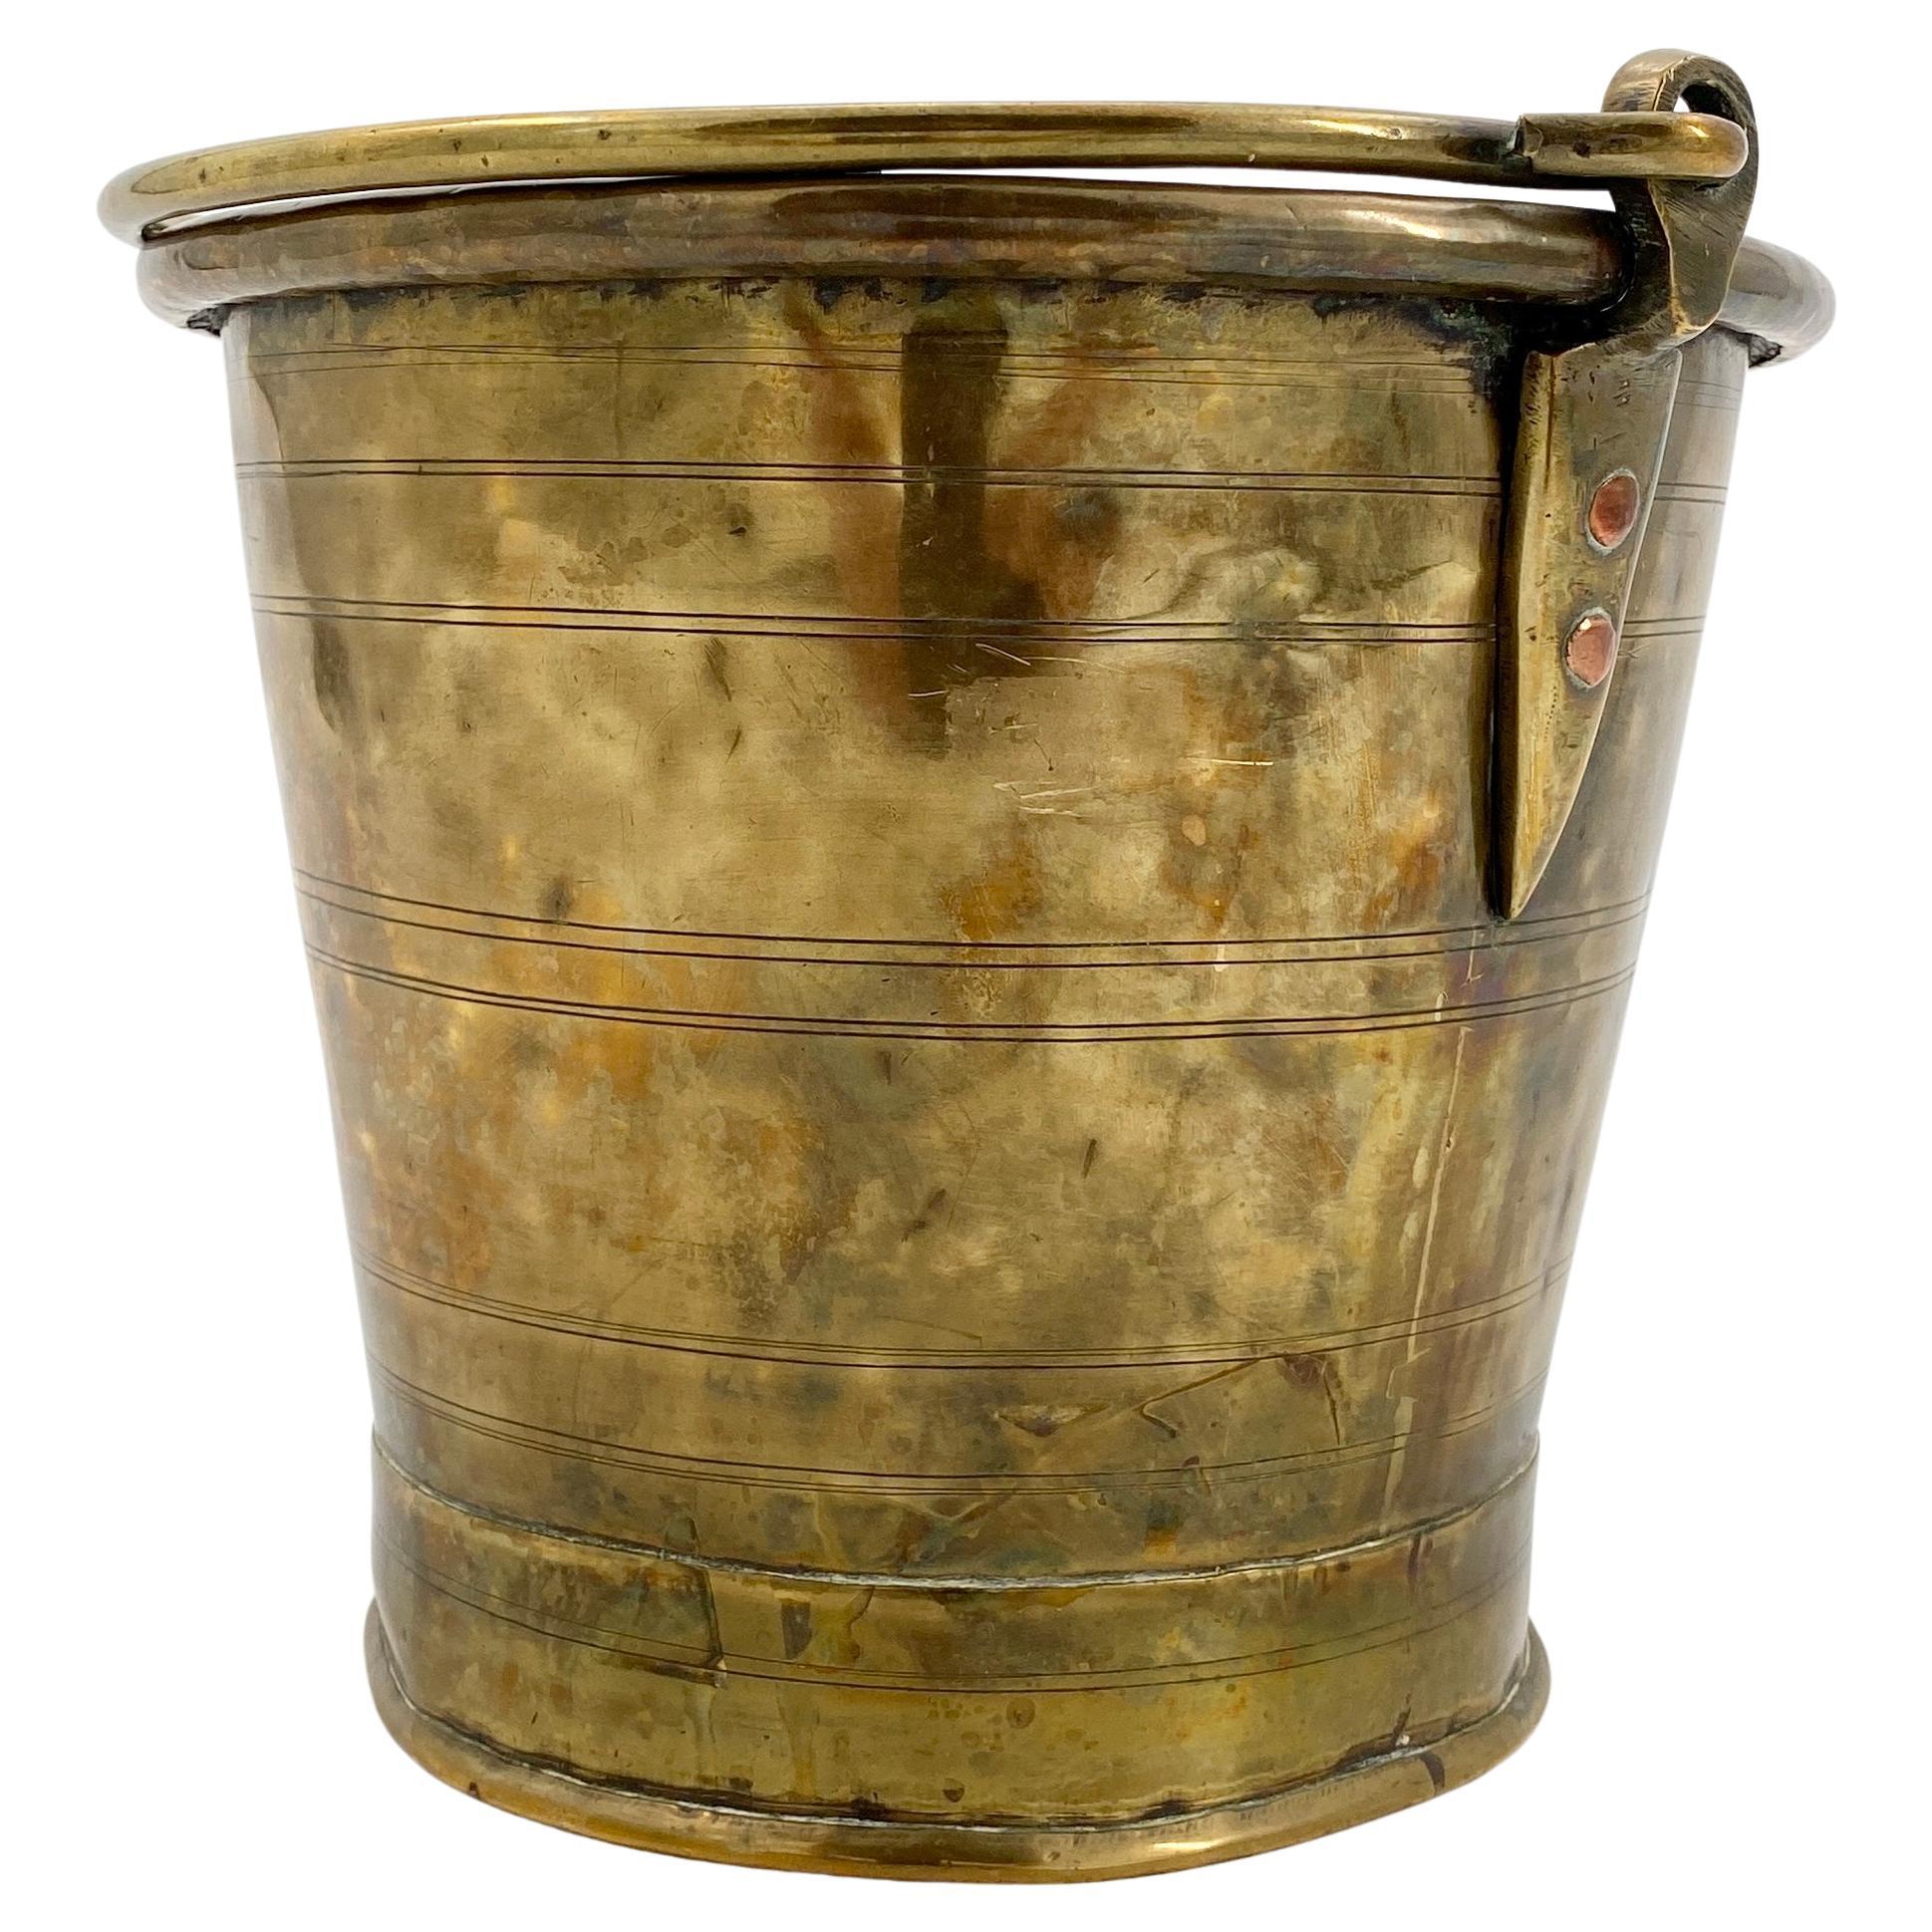 Folk Art Antique Scandinavian Coal or Fireplace Bucket in Brass, Circa 1810